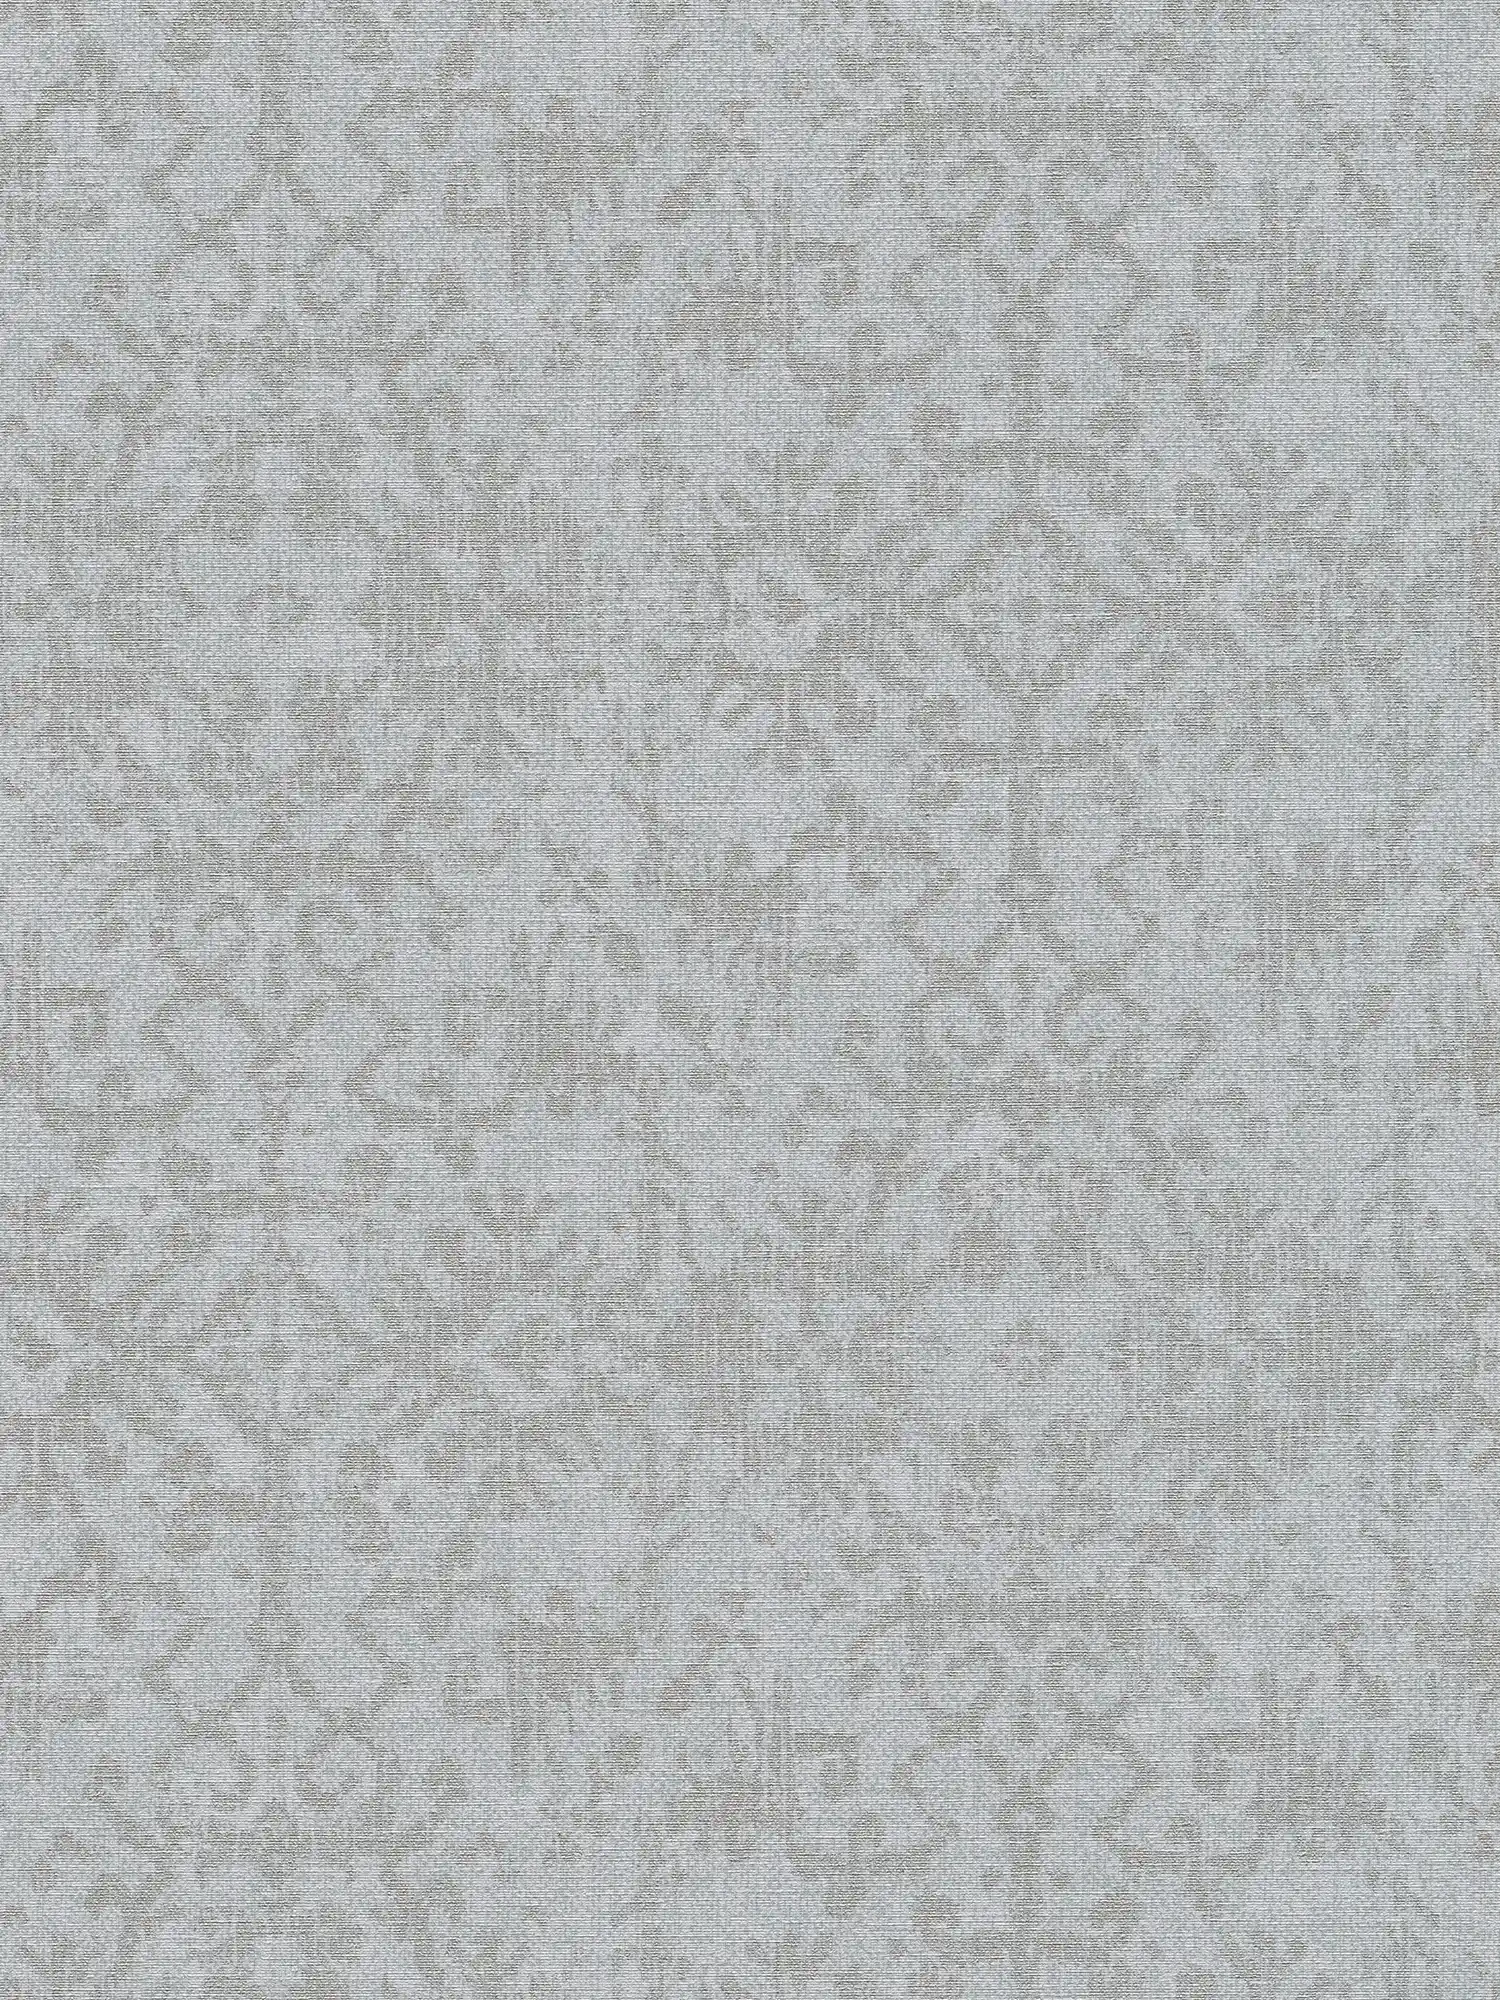 textiel optiek behang etnisch ornament patroon - grijs
